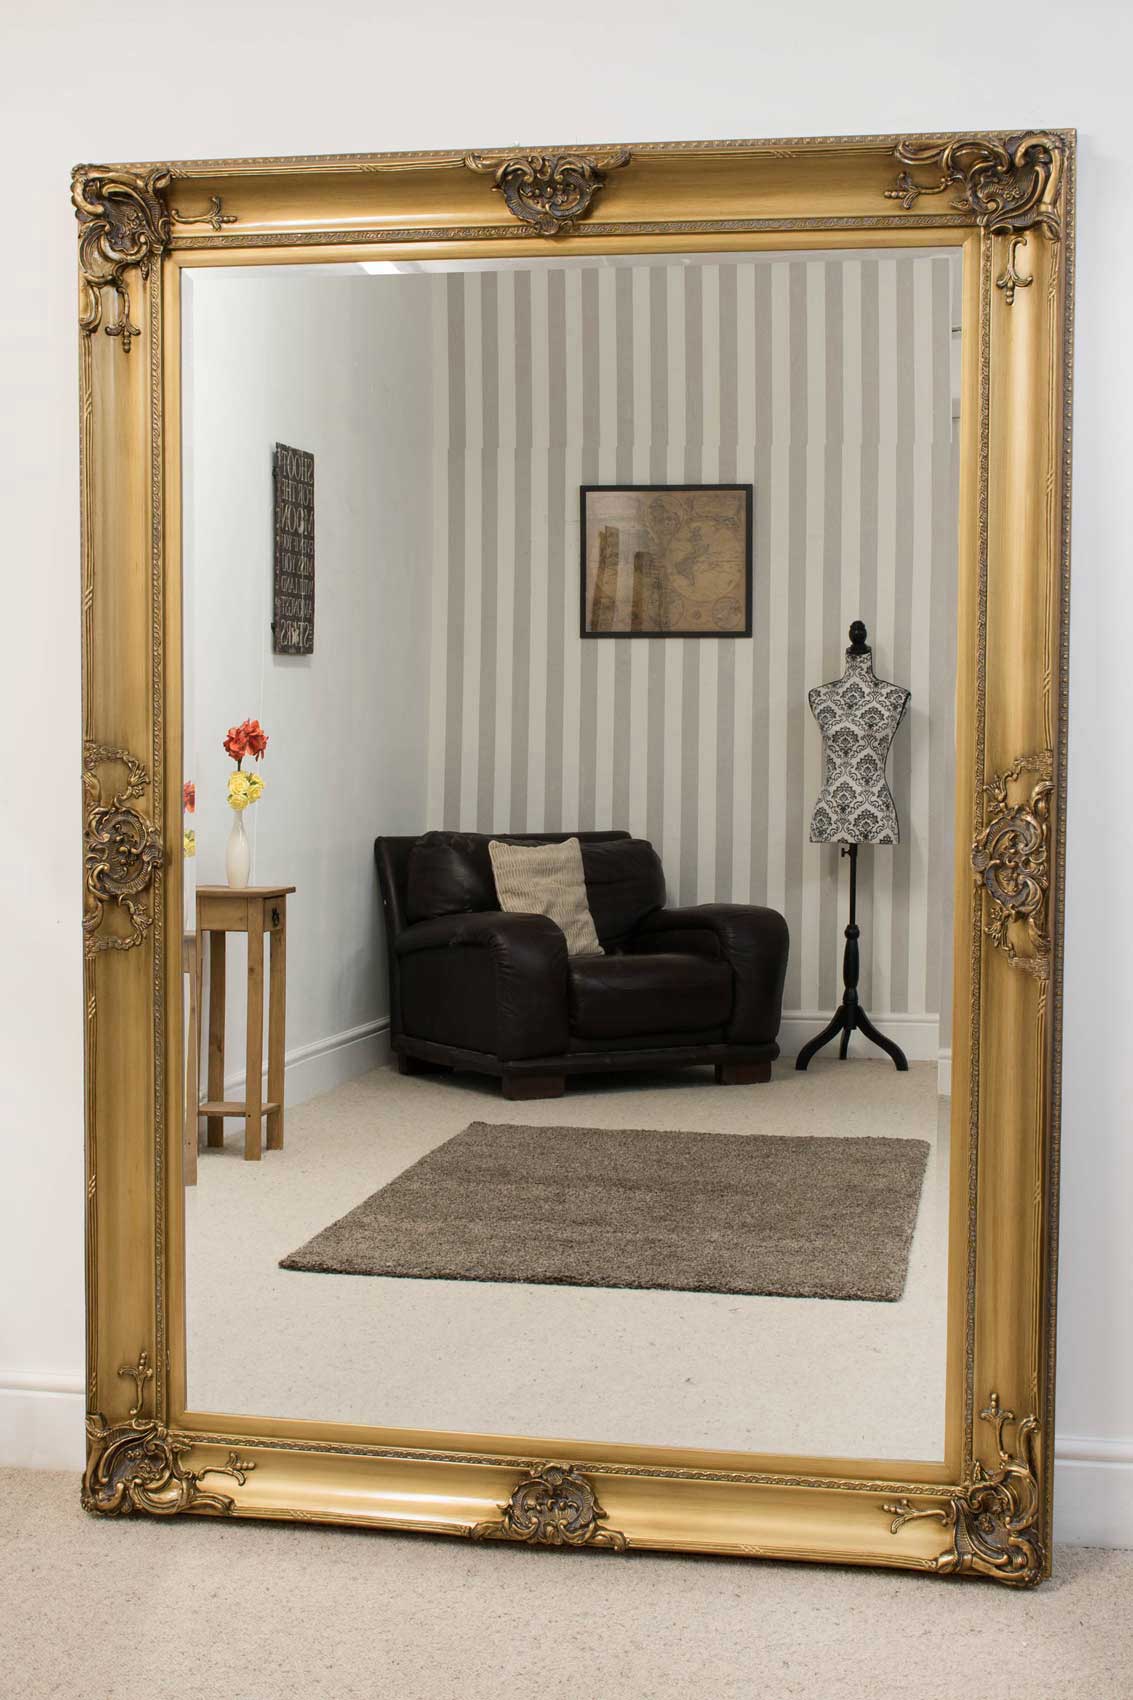 Big Wall Mirror: An Elegant Reflection